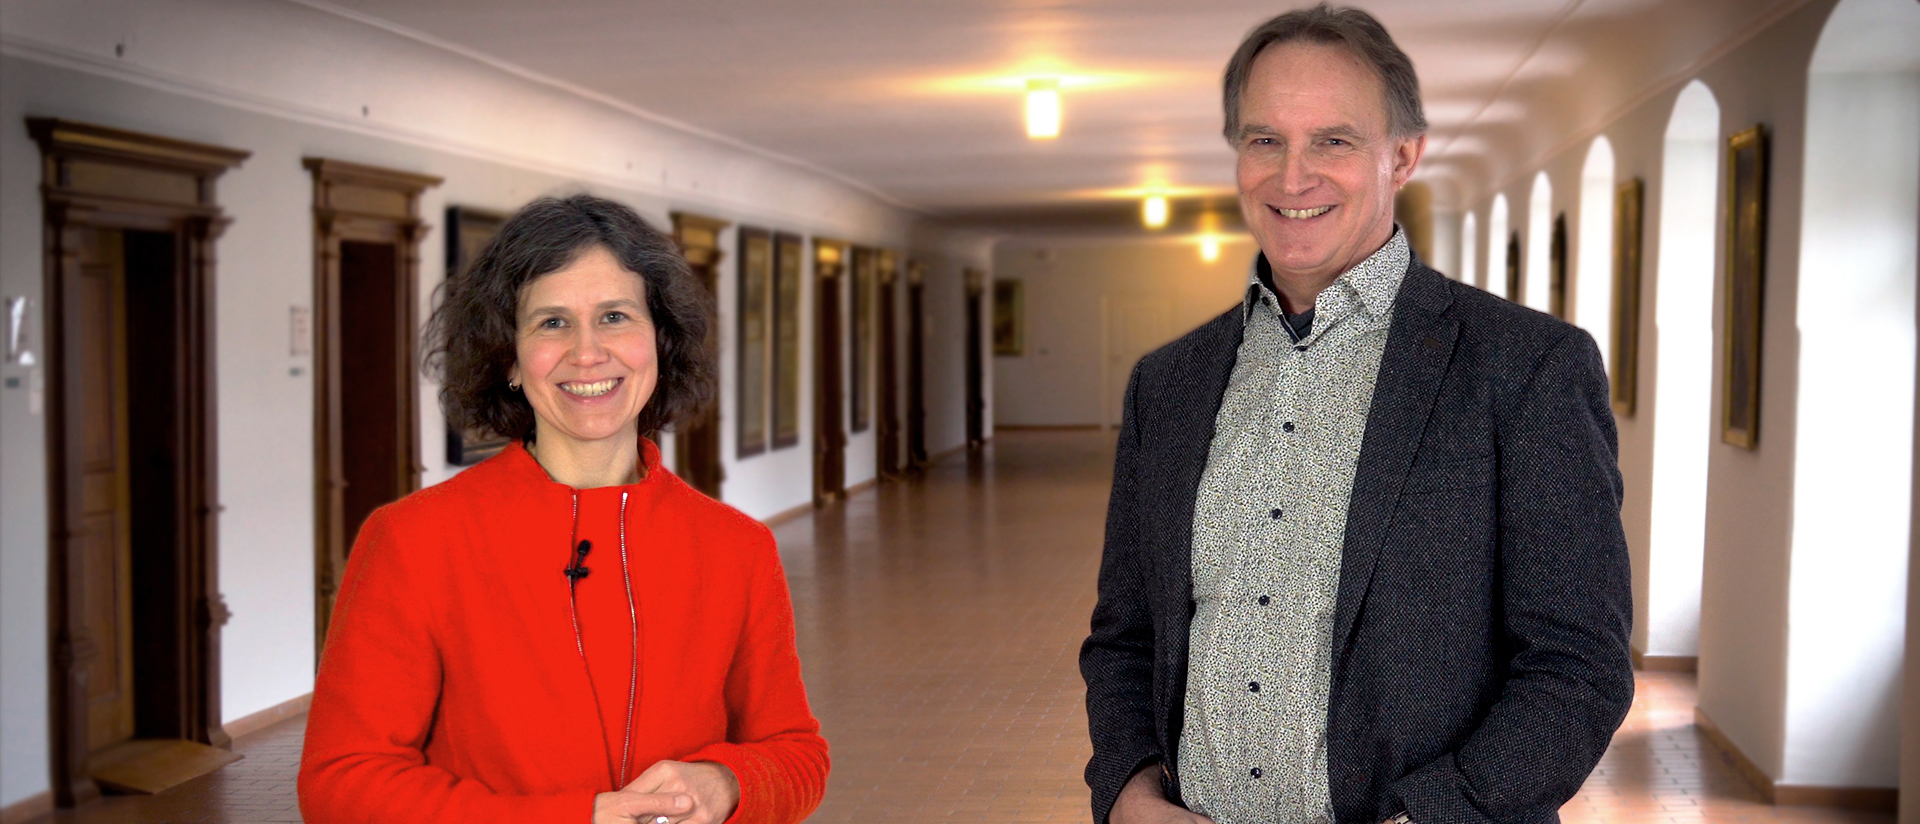 Christiane Schubert und Magnus Hächler, Arbeitsgruppe Laudato si', Bistum St. Gallen. Video: Kirche - Umwelt - Schöpfung